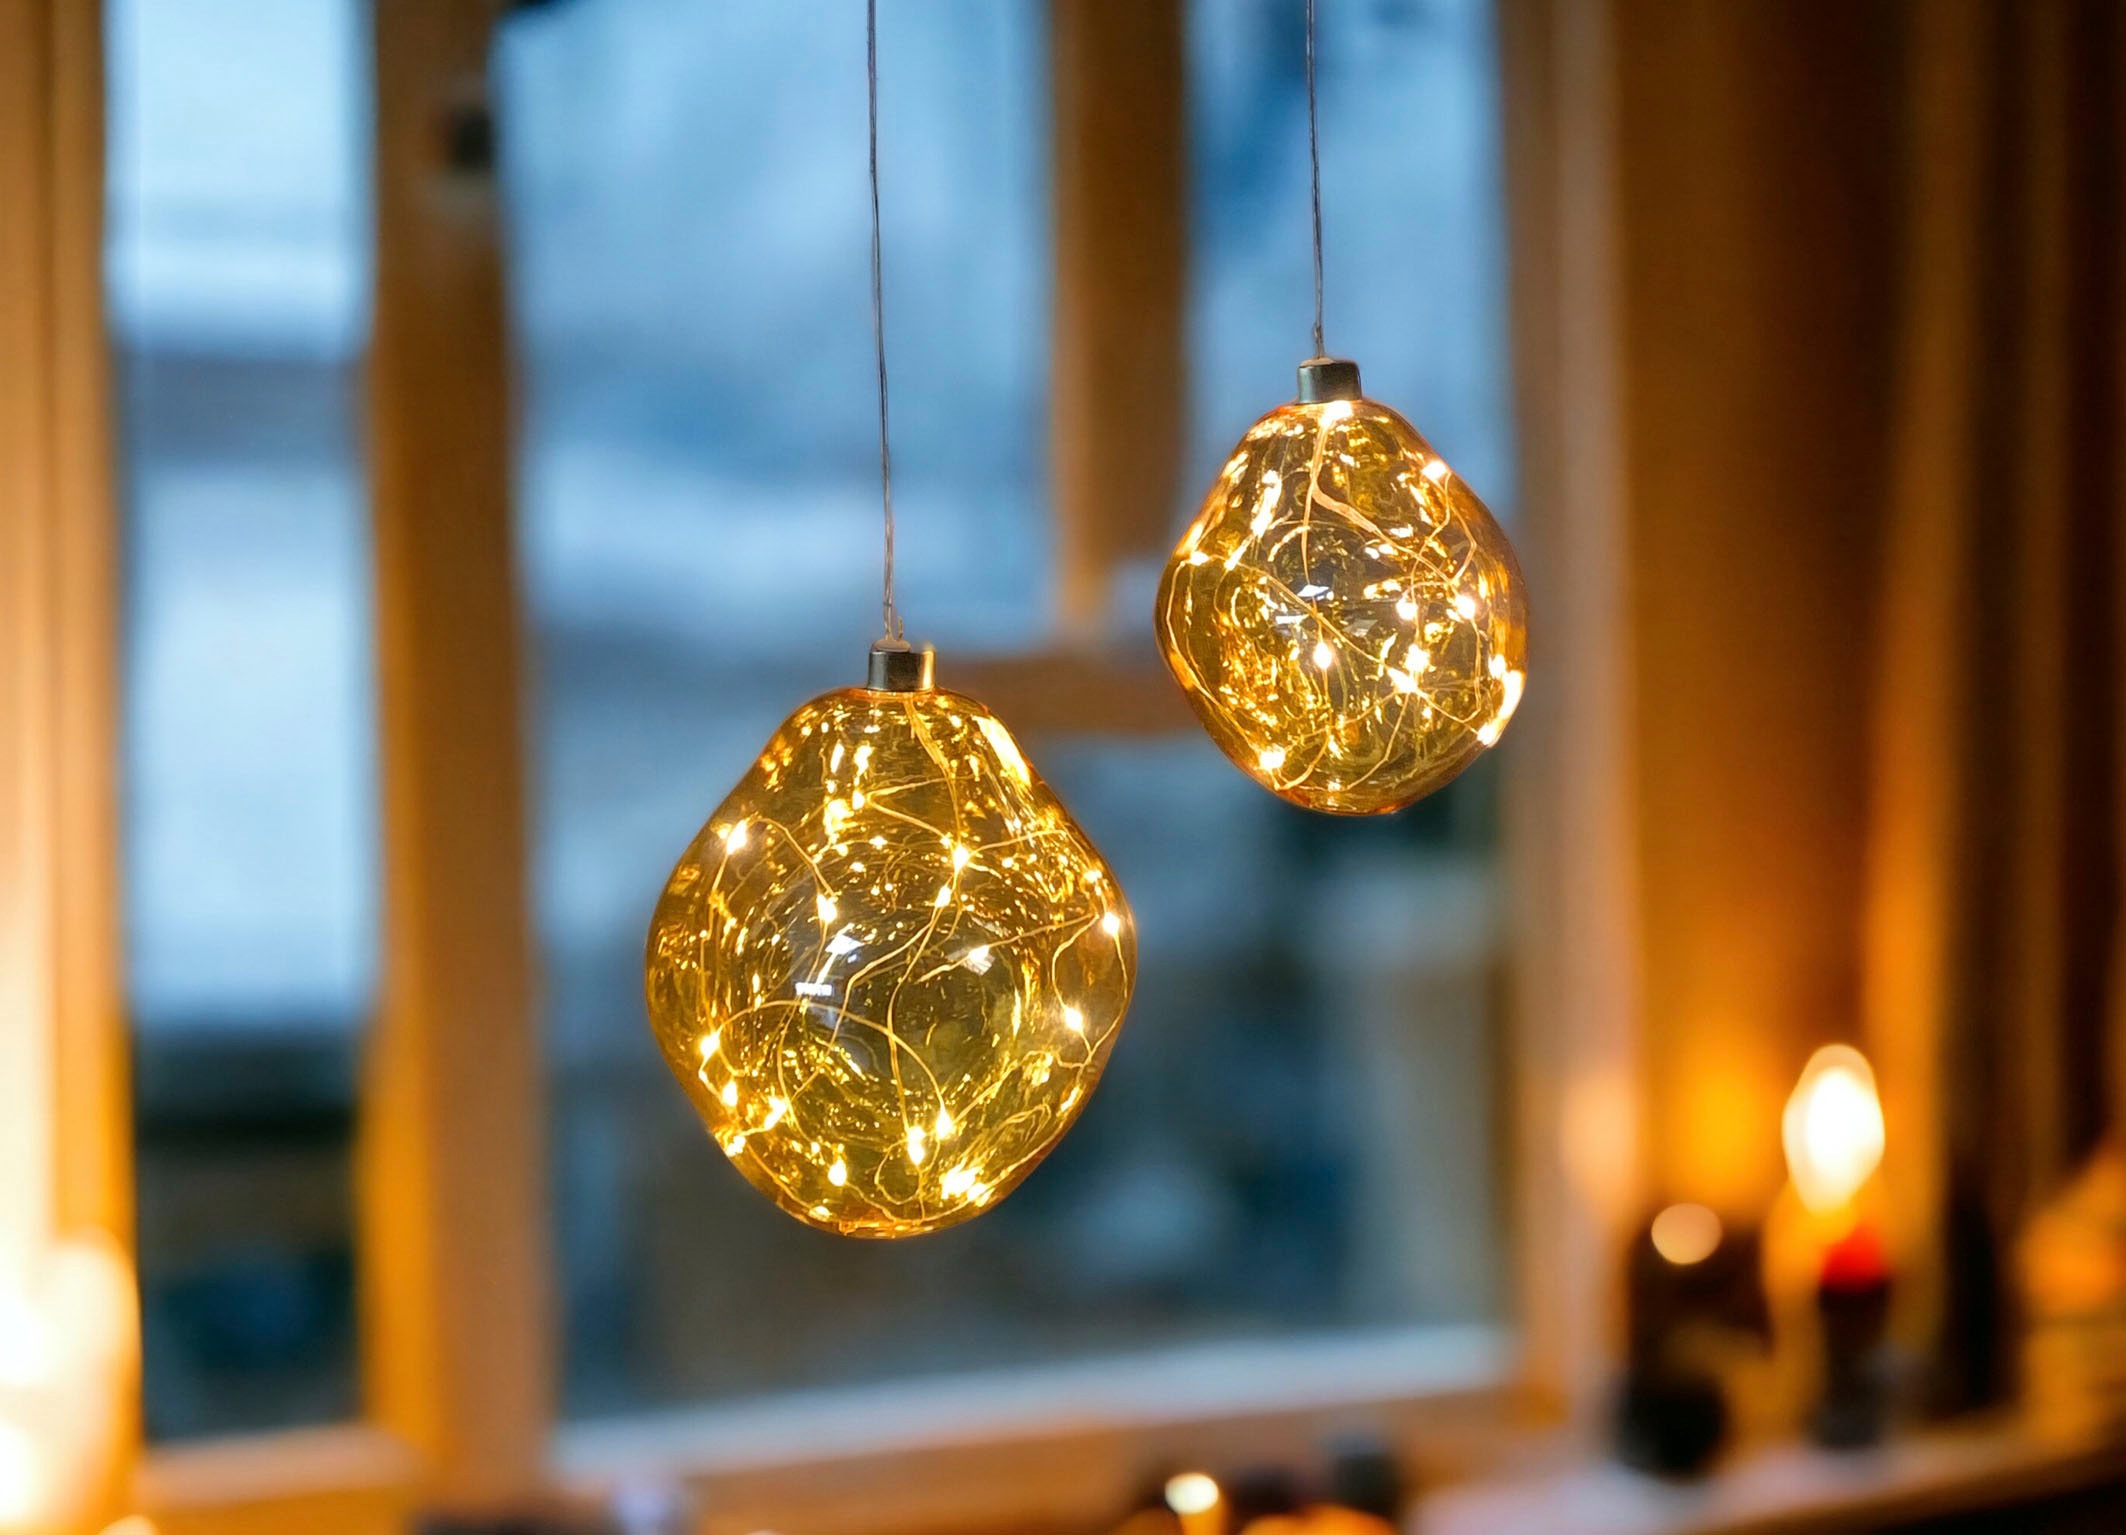 Leonique Dekokugel »Birdelle, mit LED Beleuchtung, Weihnachtsdeko in organischer Form«, Ø ca. 15 cm, Christbaumkugeln, organische Kugeln aus Glas